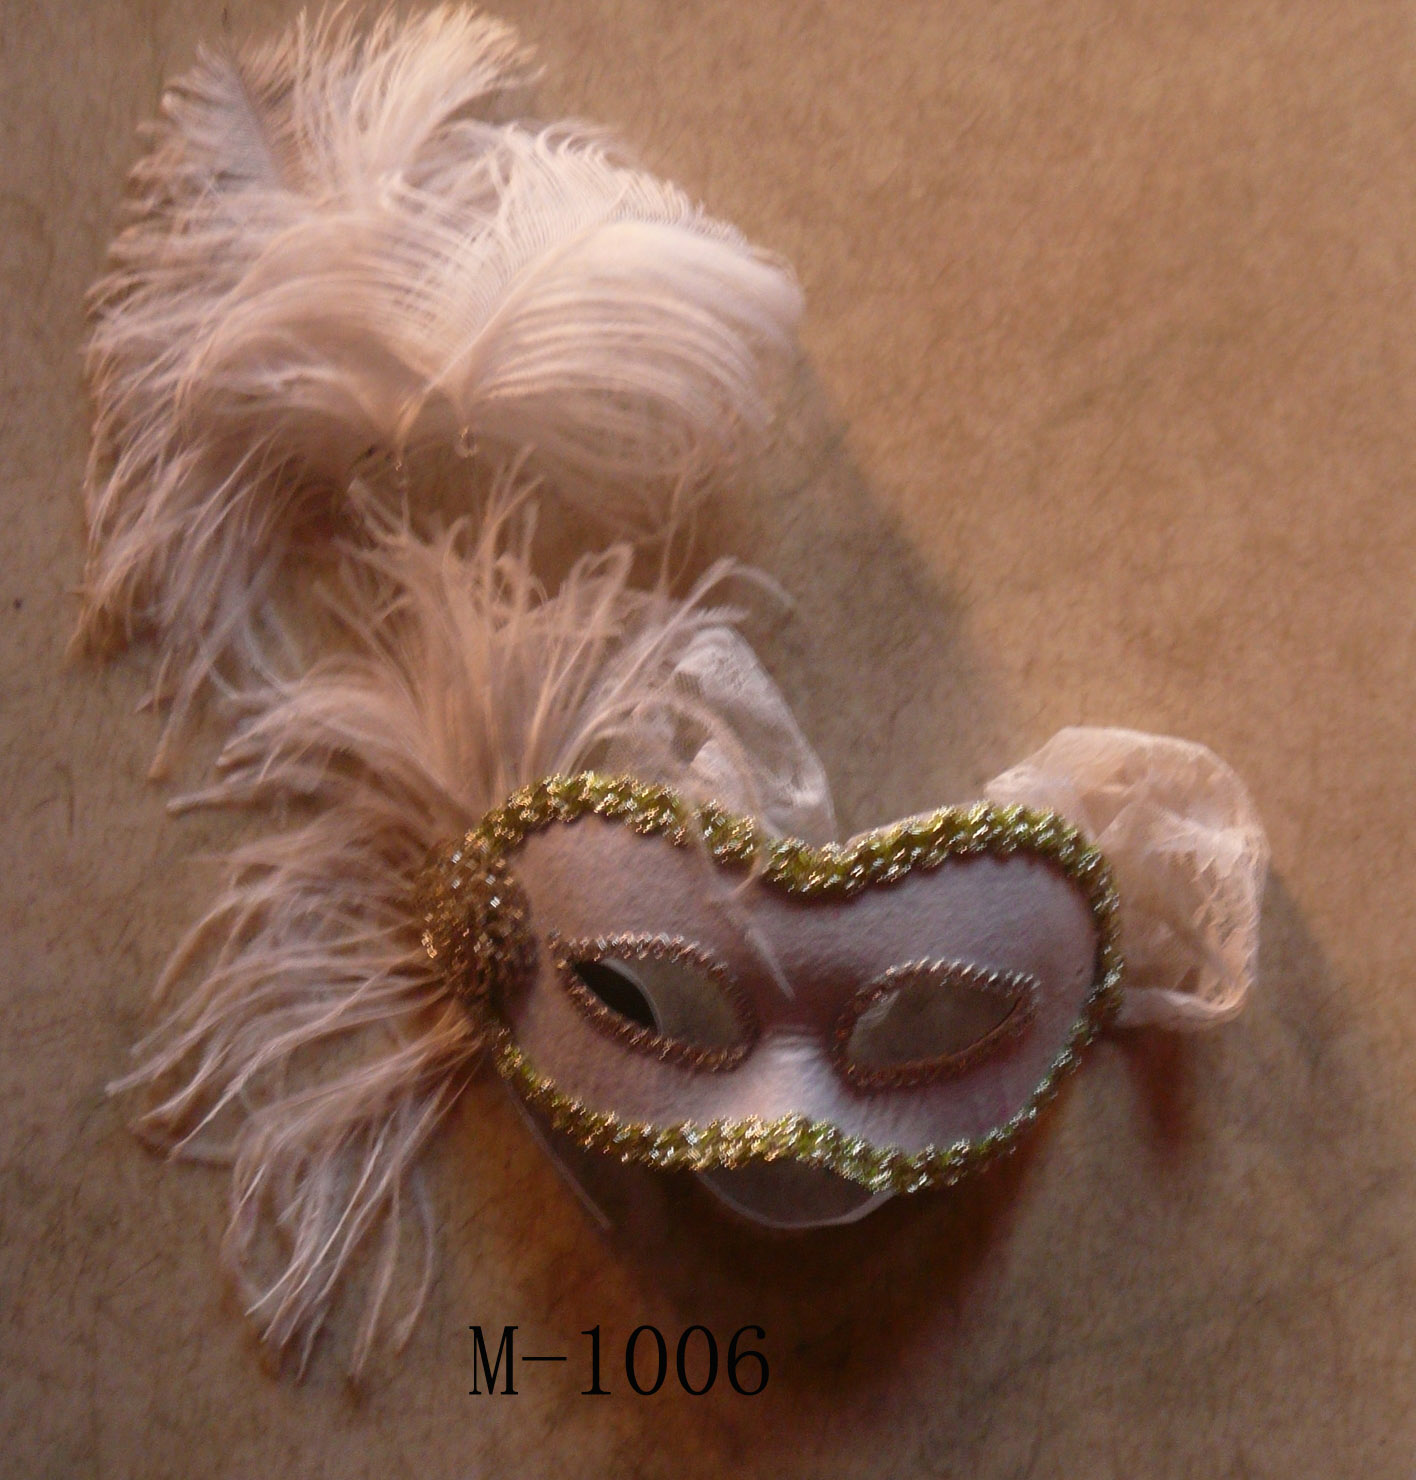  Дешевые маски из перьев для продажи - Сделано в Китае M-1006